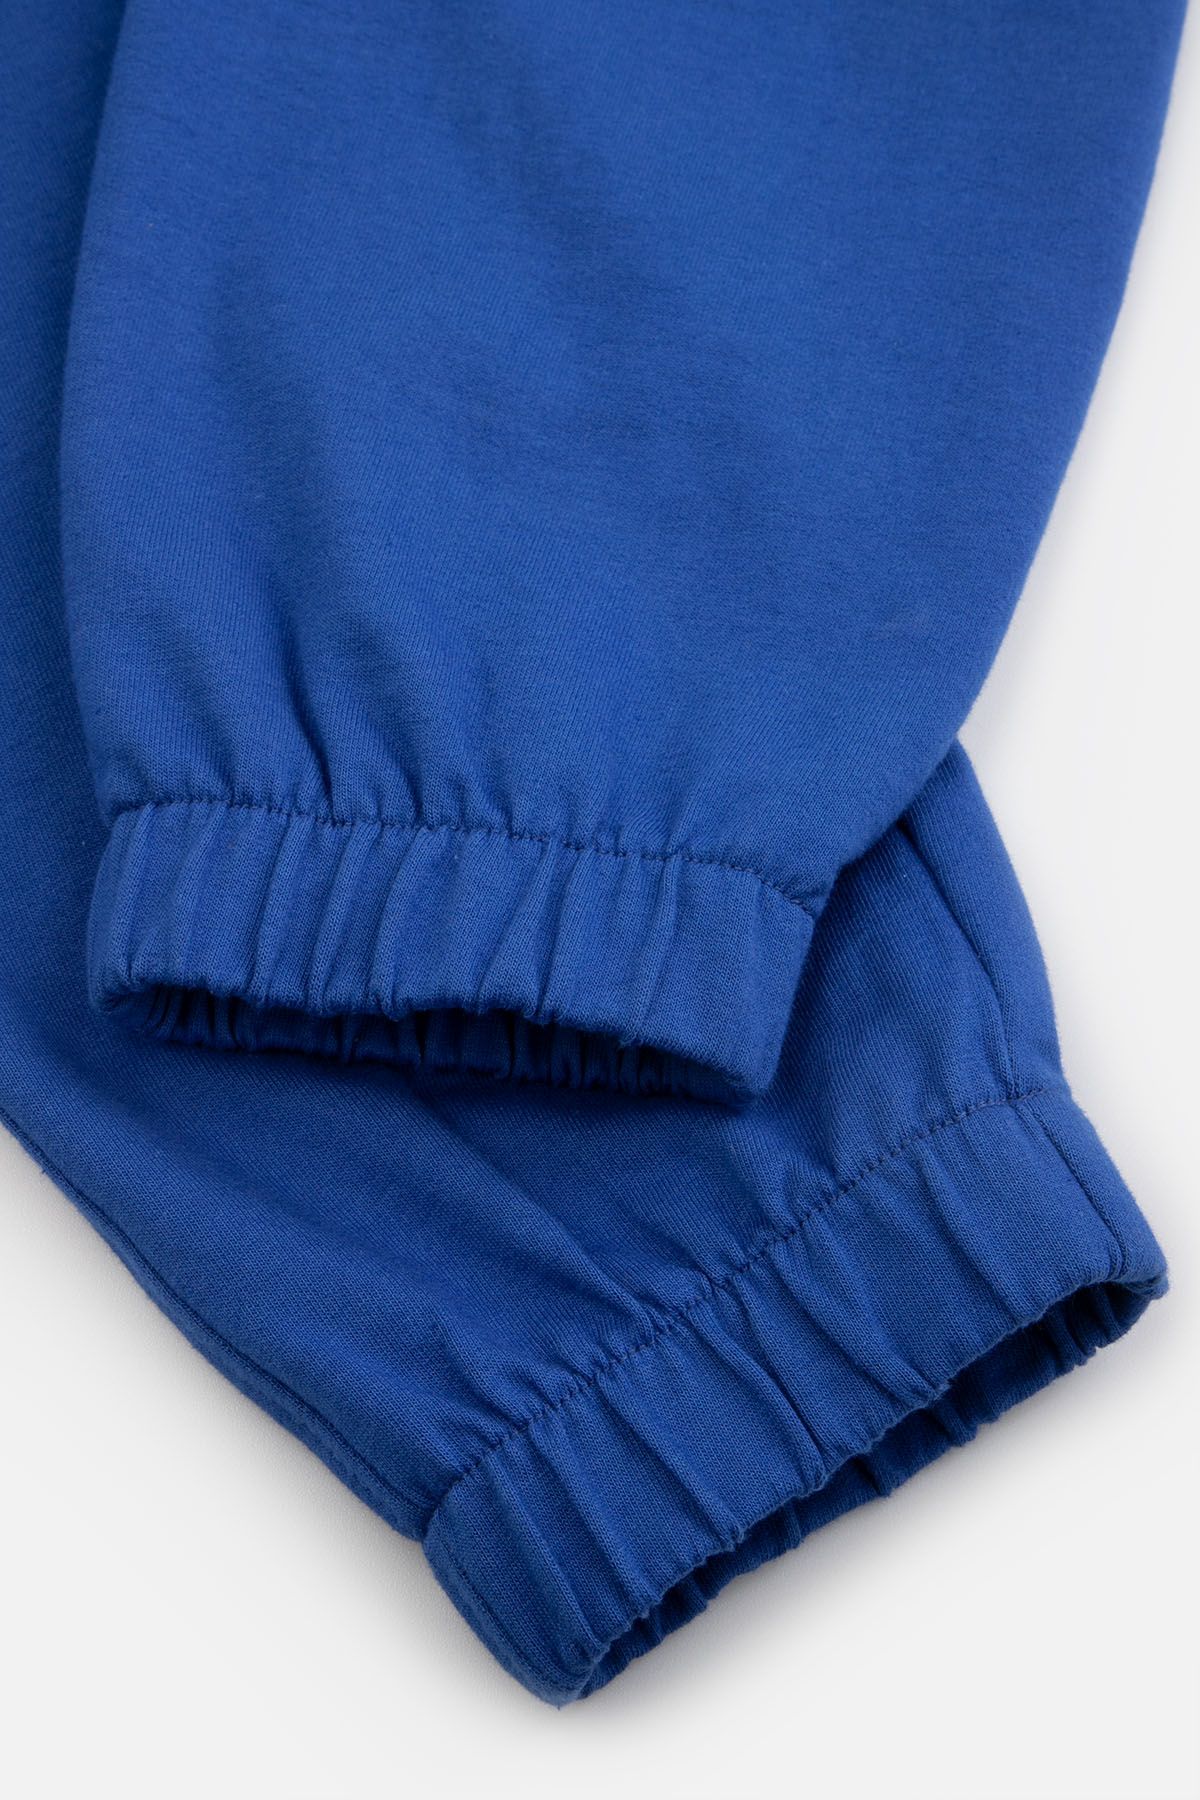 Spodnie dresowe BALLOON kobaltowe z nadrukiem na nogawce 2221811